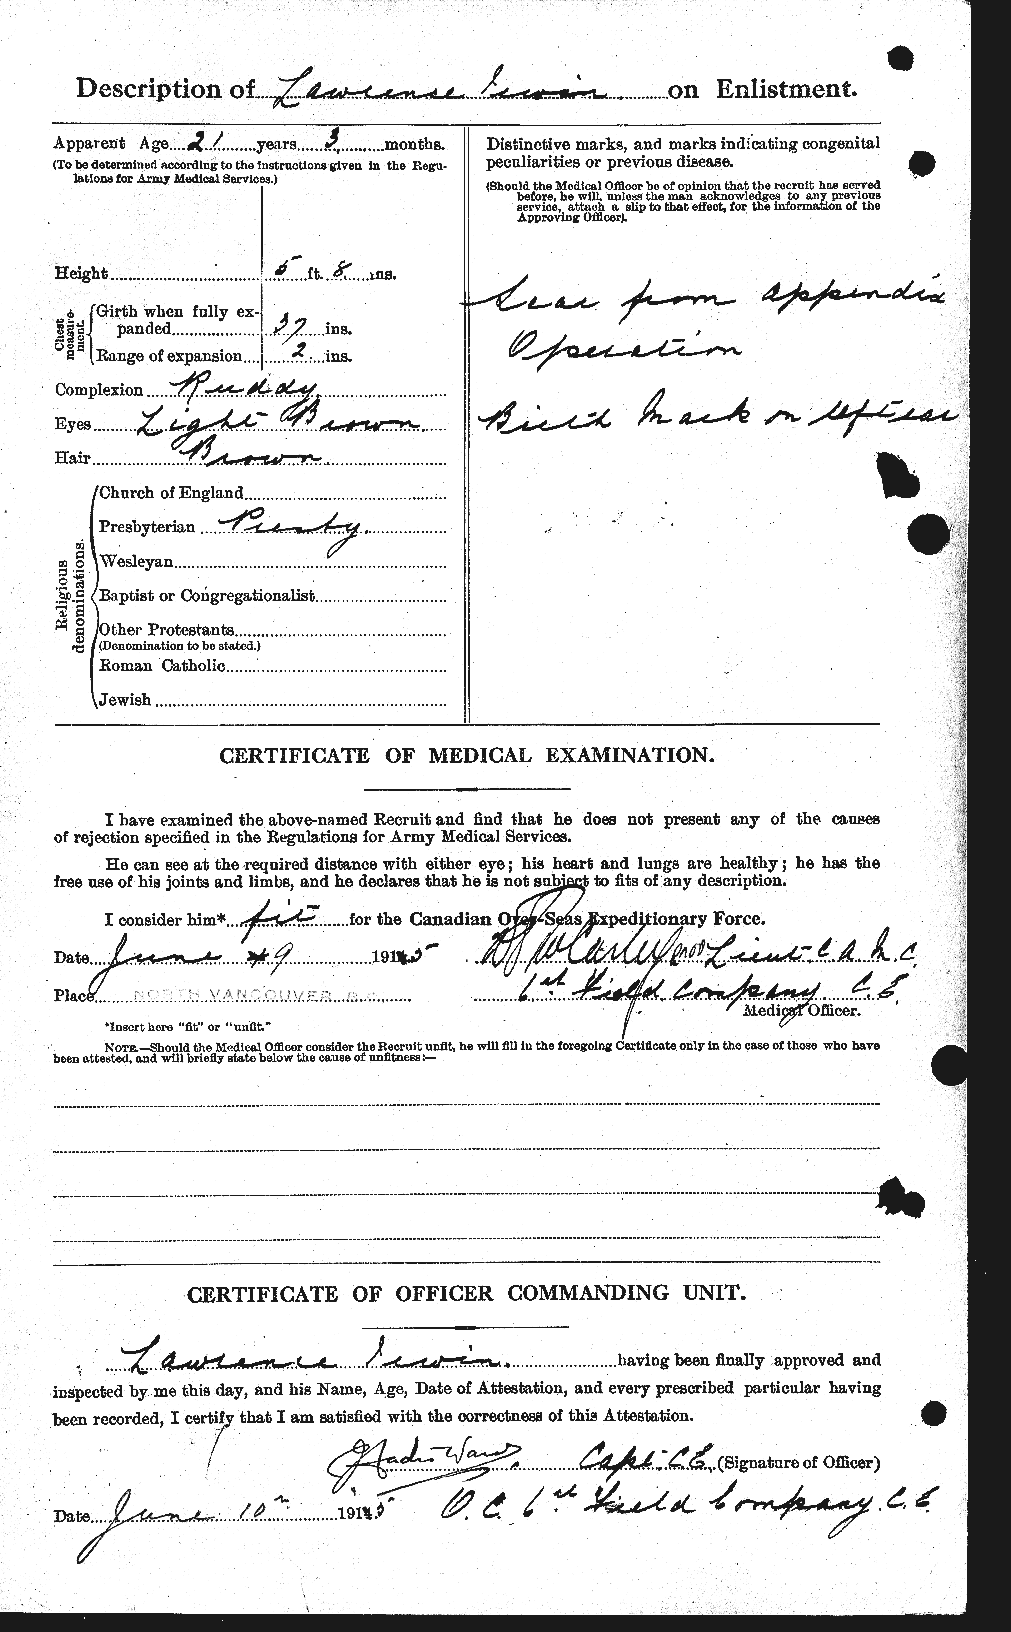 Dossiers du Personnel de la Première Guerre mondiale - CEC 412950b